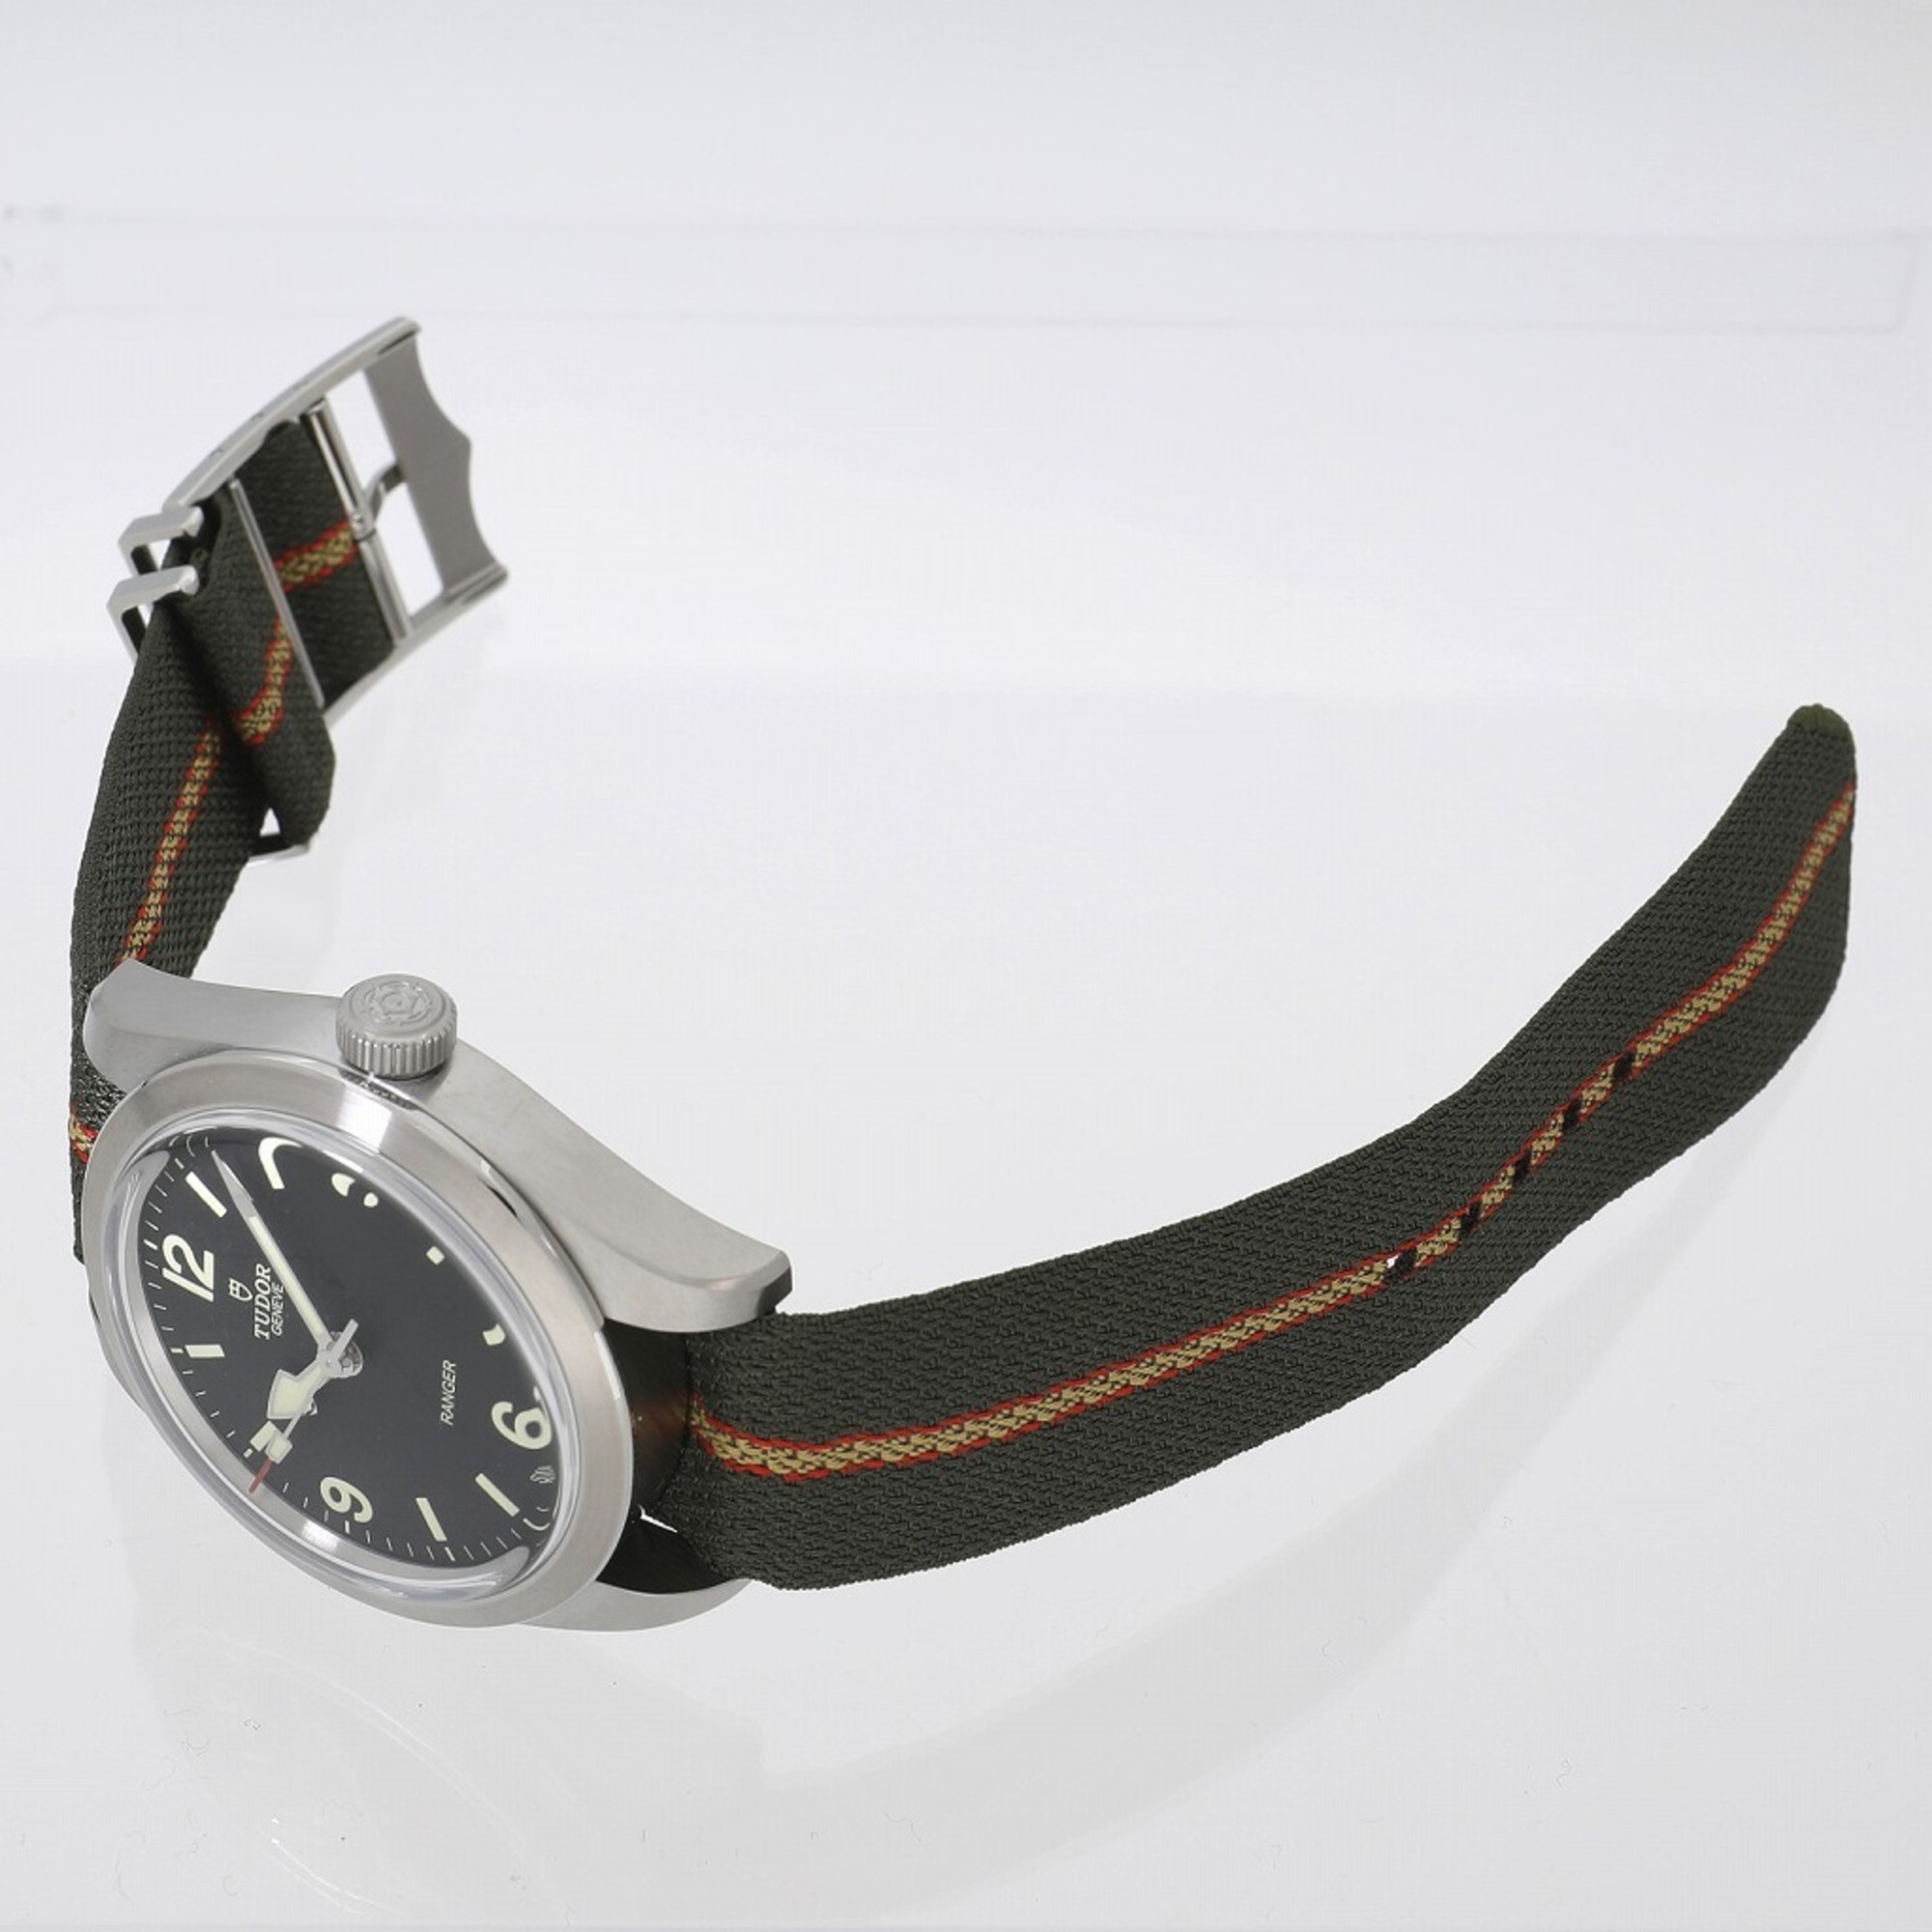 Tudor Ranger M79950-0003 Black Men's Watch